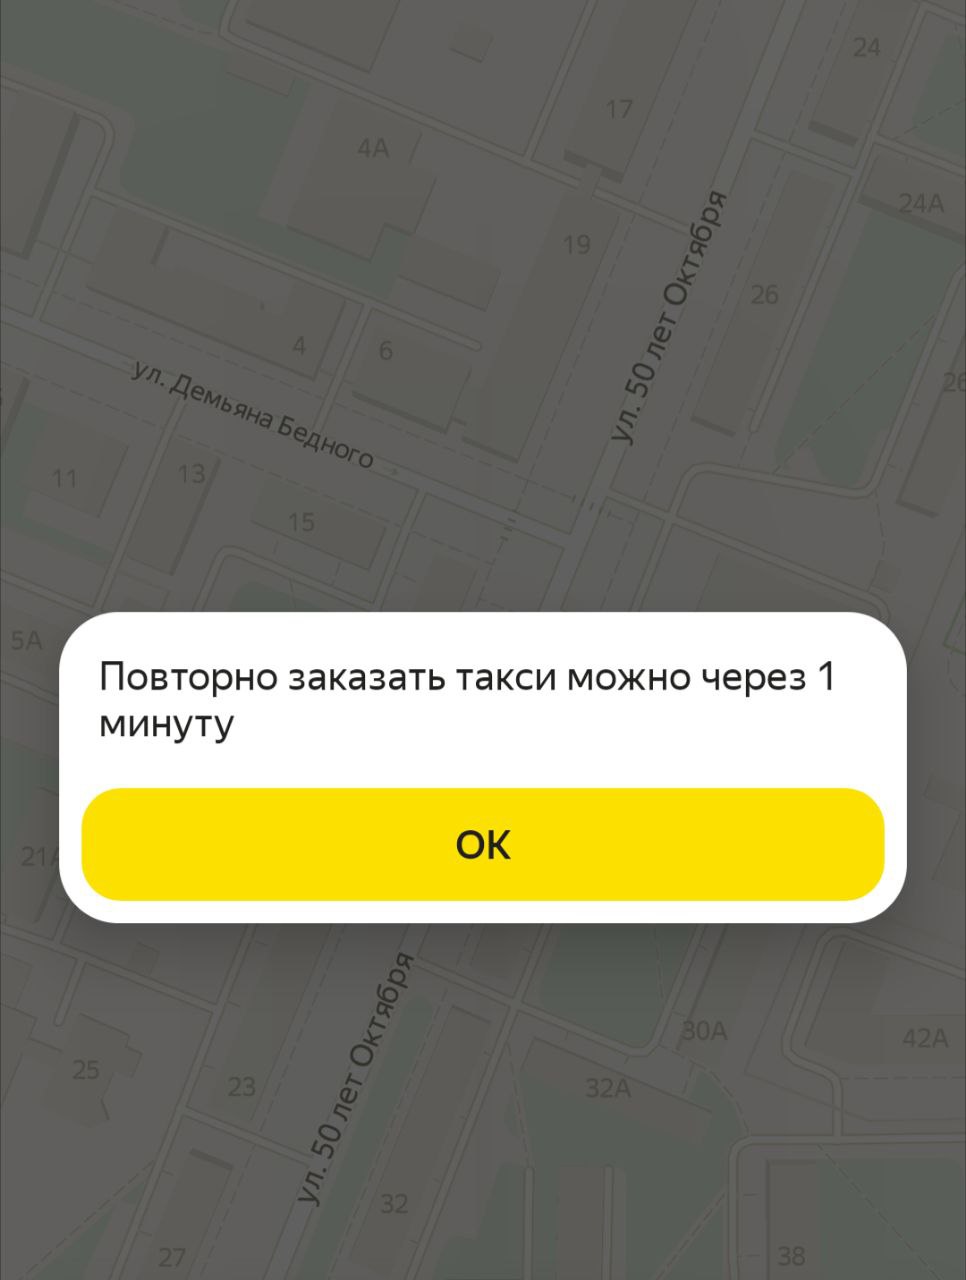 Кемеровчане пожаловались на сбой в работе сервисов такси: уехать нельзя через Uber и Яндекс Go